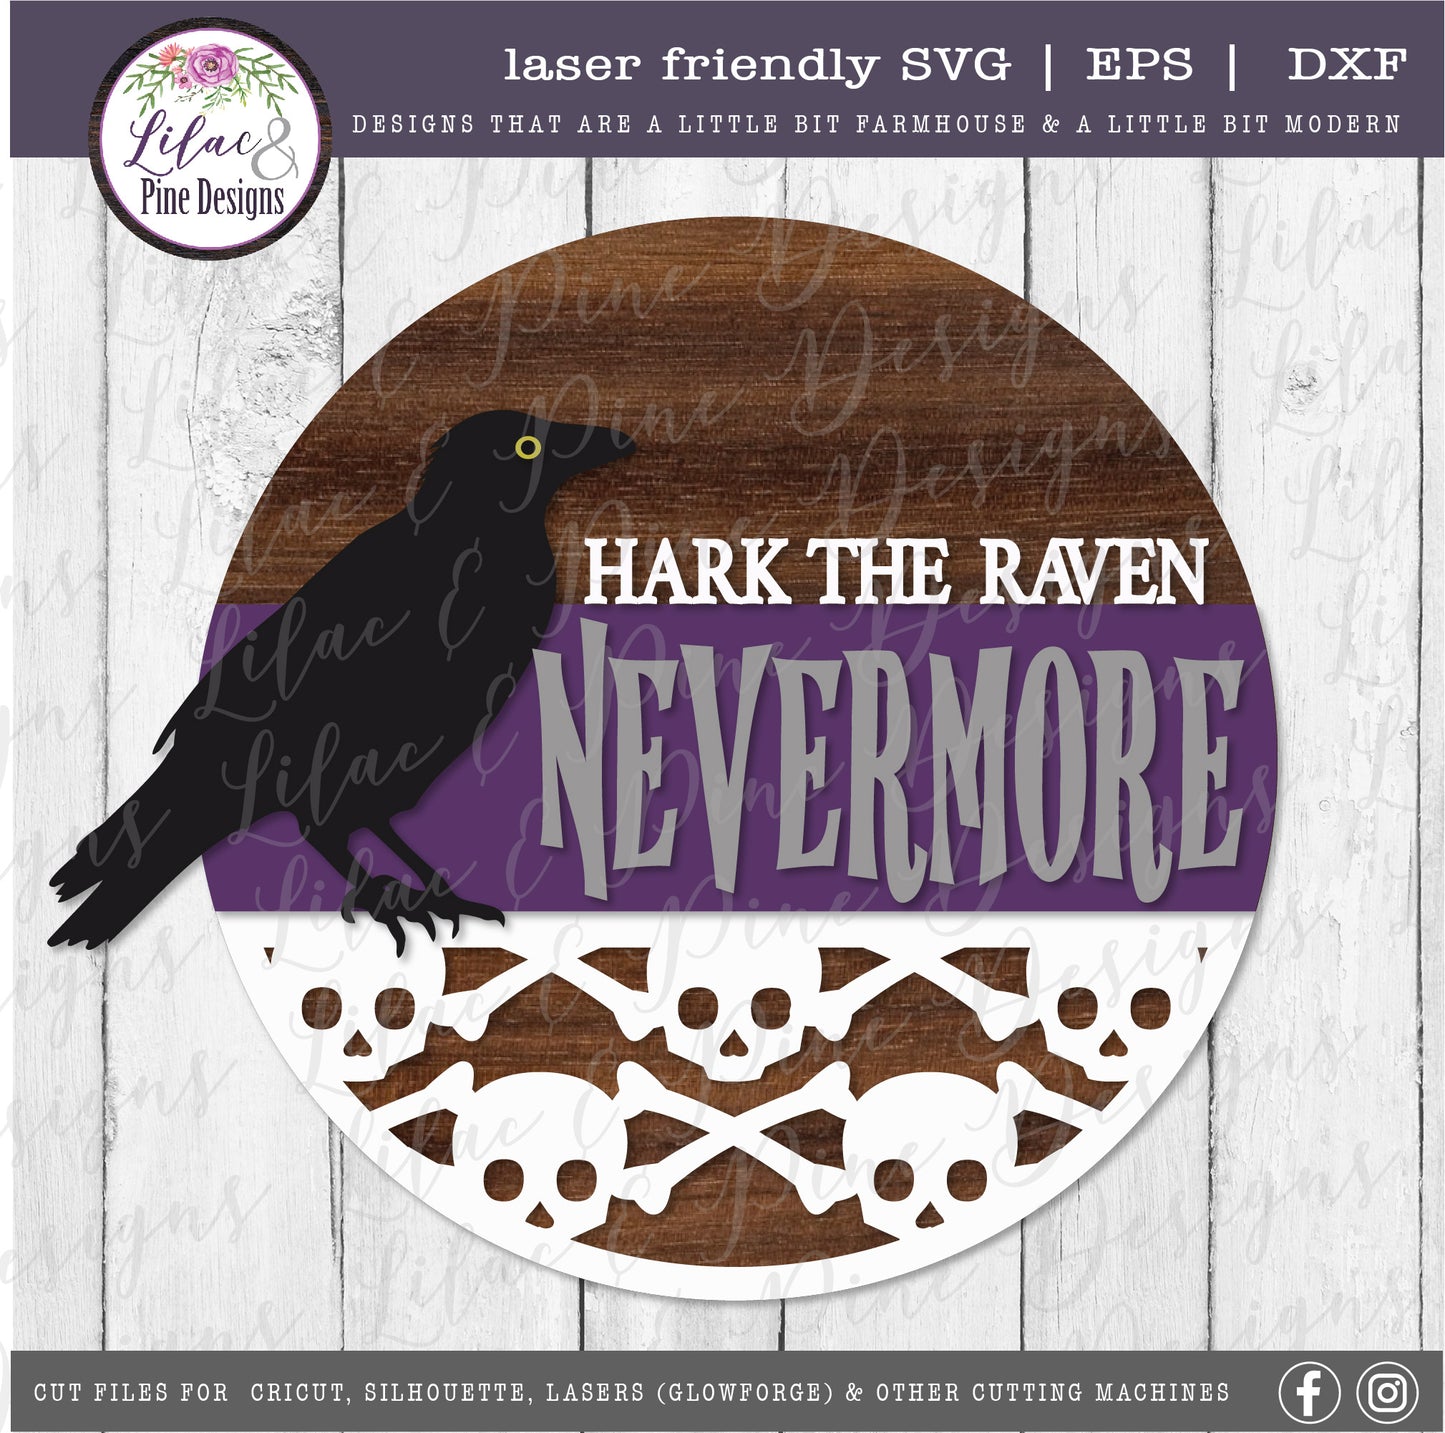 Nevermore Raven Sign SVG, Halloween Welcome SVG, Spooky SVG, Raven SVG, Skull pattern SVG, Poe SVG, Door Round, Halloween SVG, Halloween decor, laser cut file, Glowforge SVG